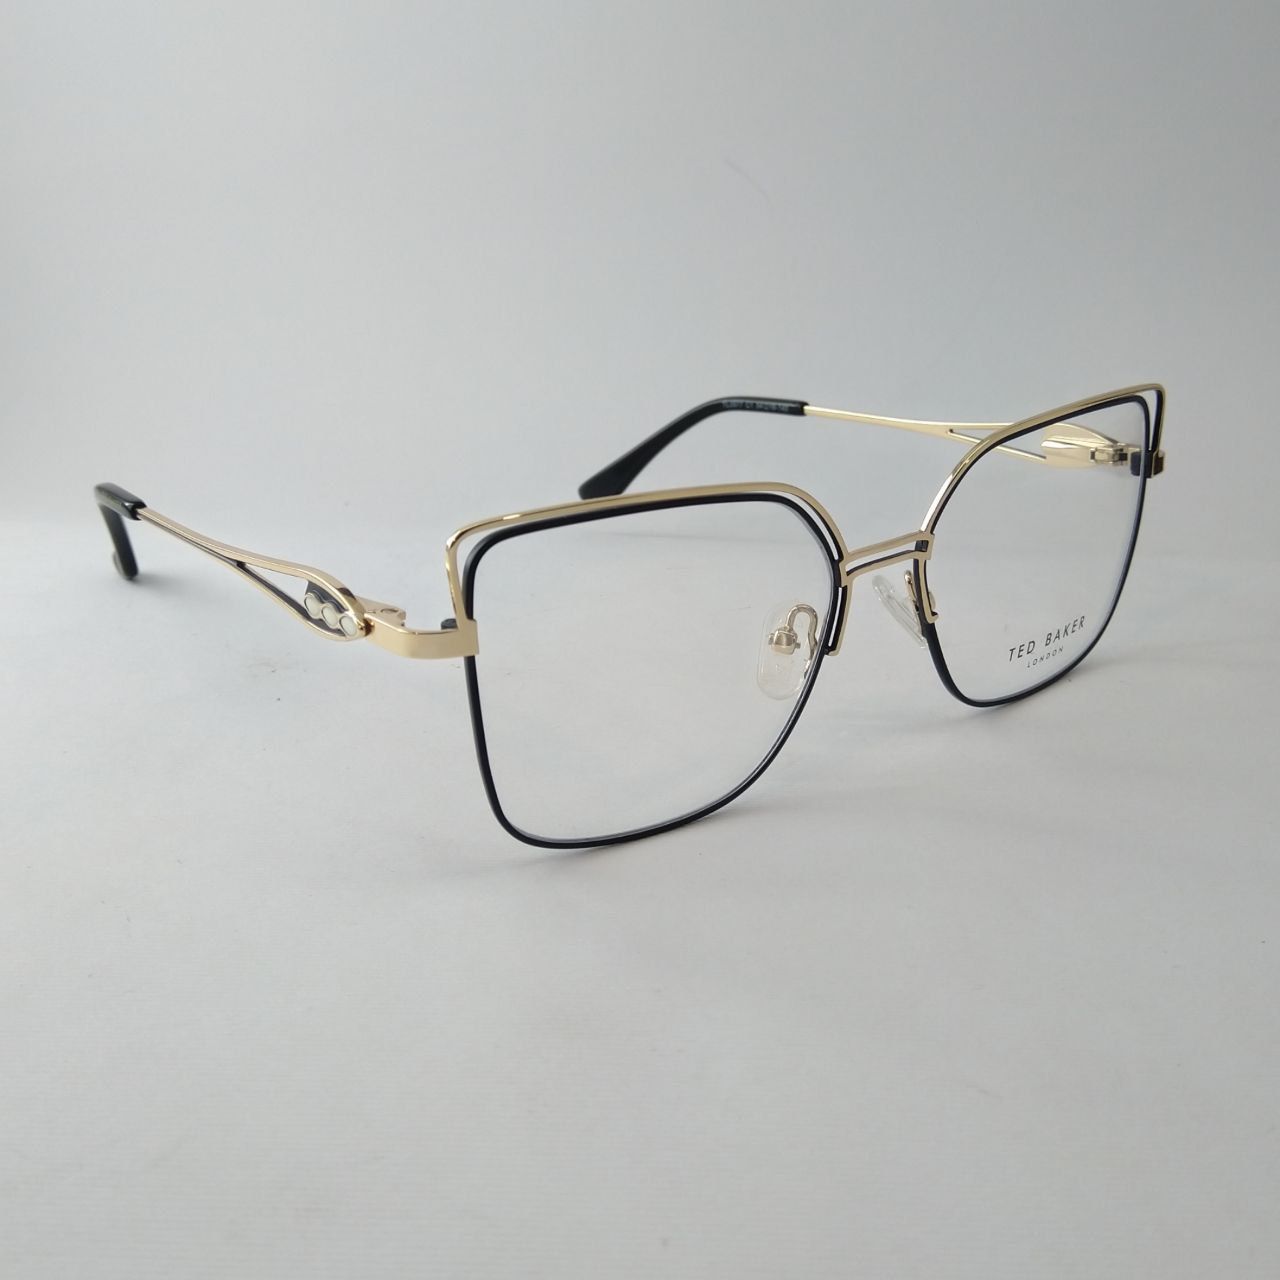 فریم عینک طبی زنانه تد بیکر مدل TL3577 C1 -  - 3